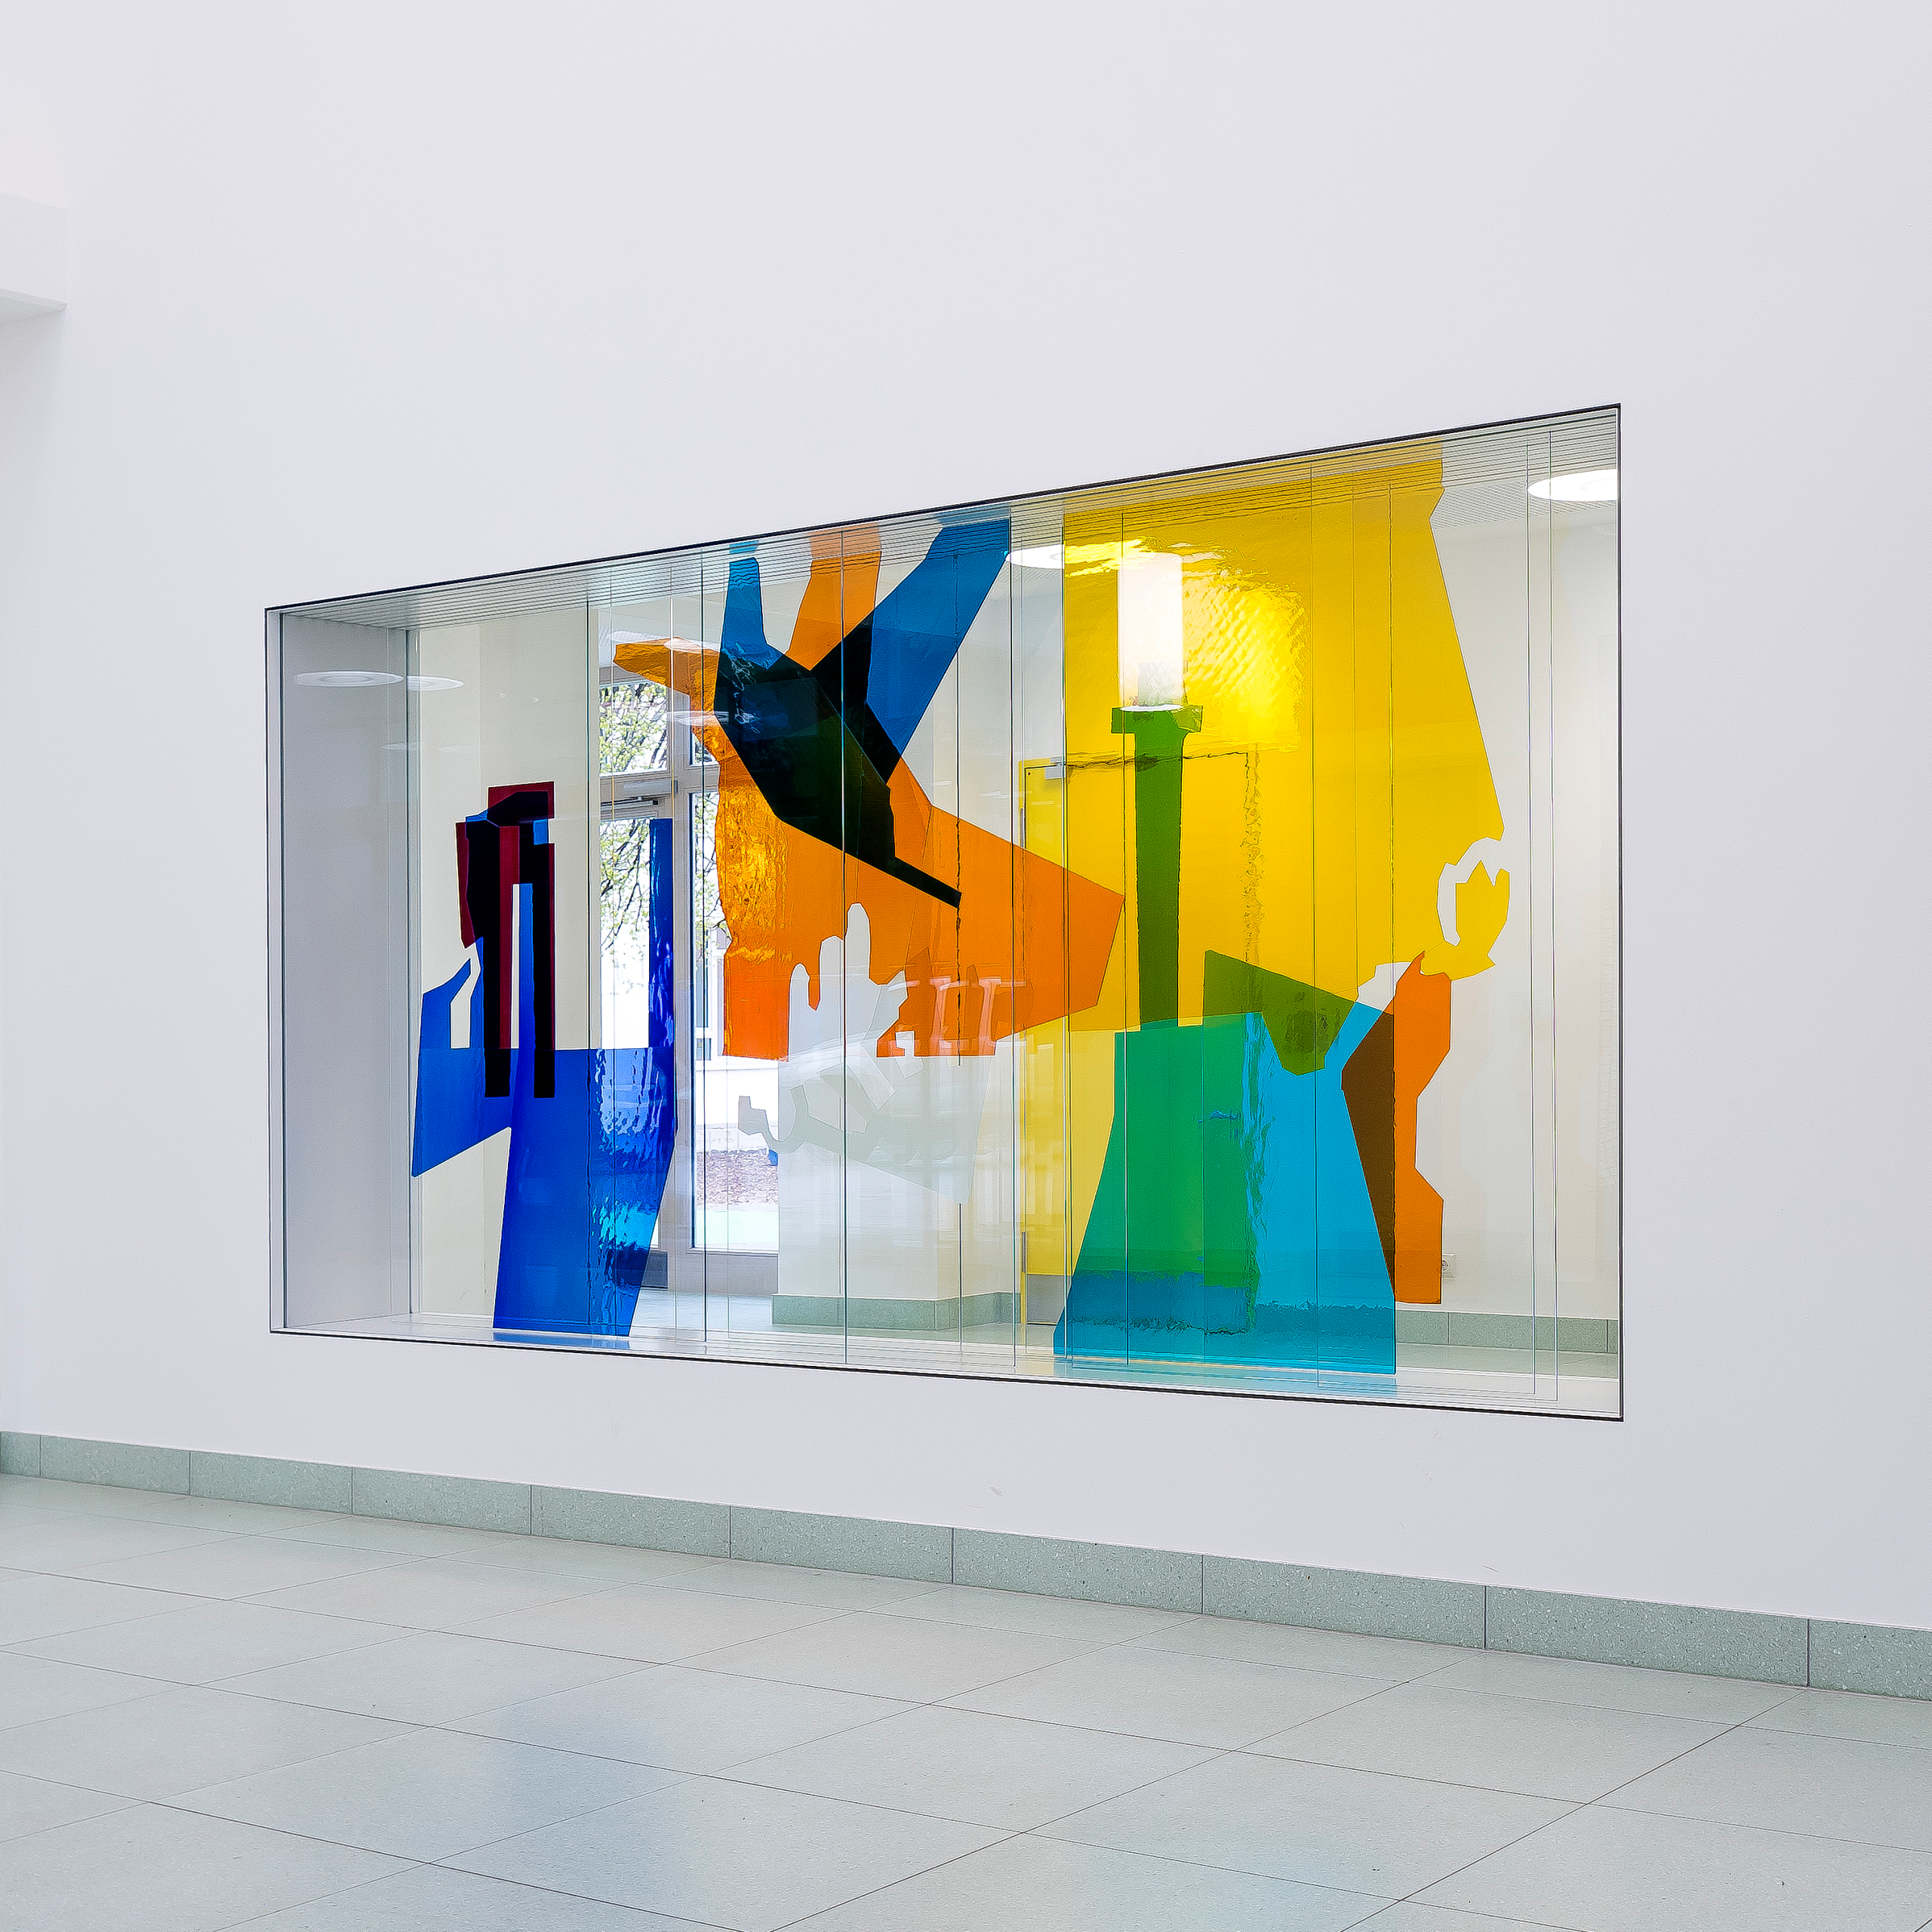 Farbenfrohe Glaskunstinstallation in lebendigen Blau-, Gelb- und Orangetönen, ausgestellt in einer hellen Galerie.